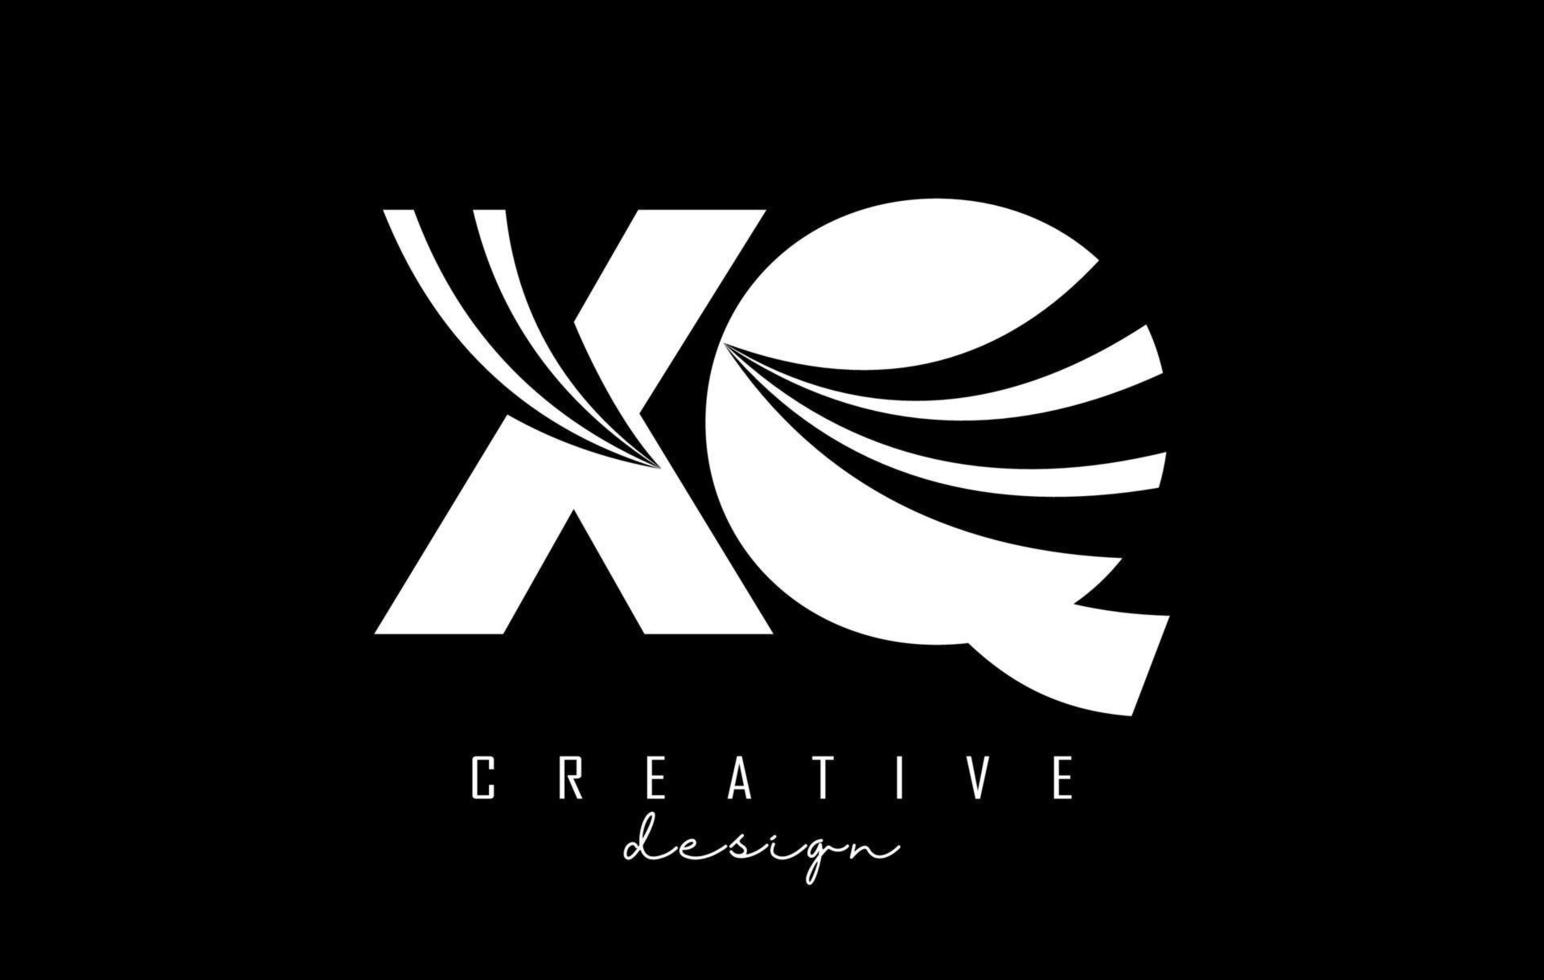 lettres blanches créatives logo xq xq avec lignes directrices et conception de concept de route. lettres avec un dessin géométrique. vecteur